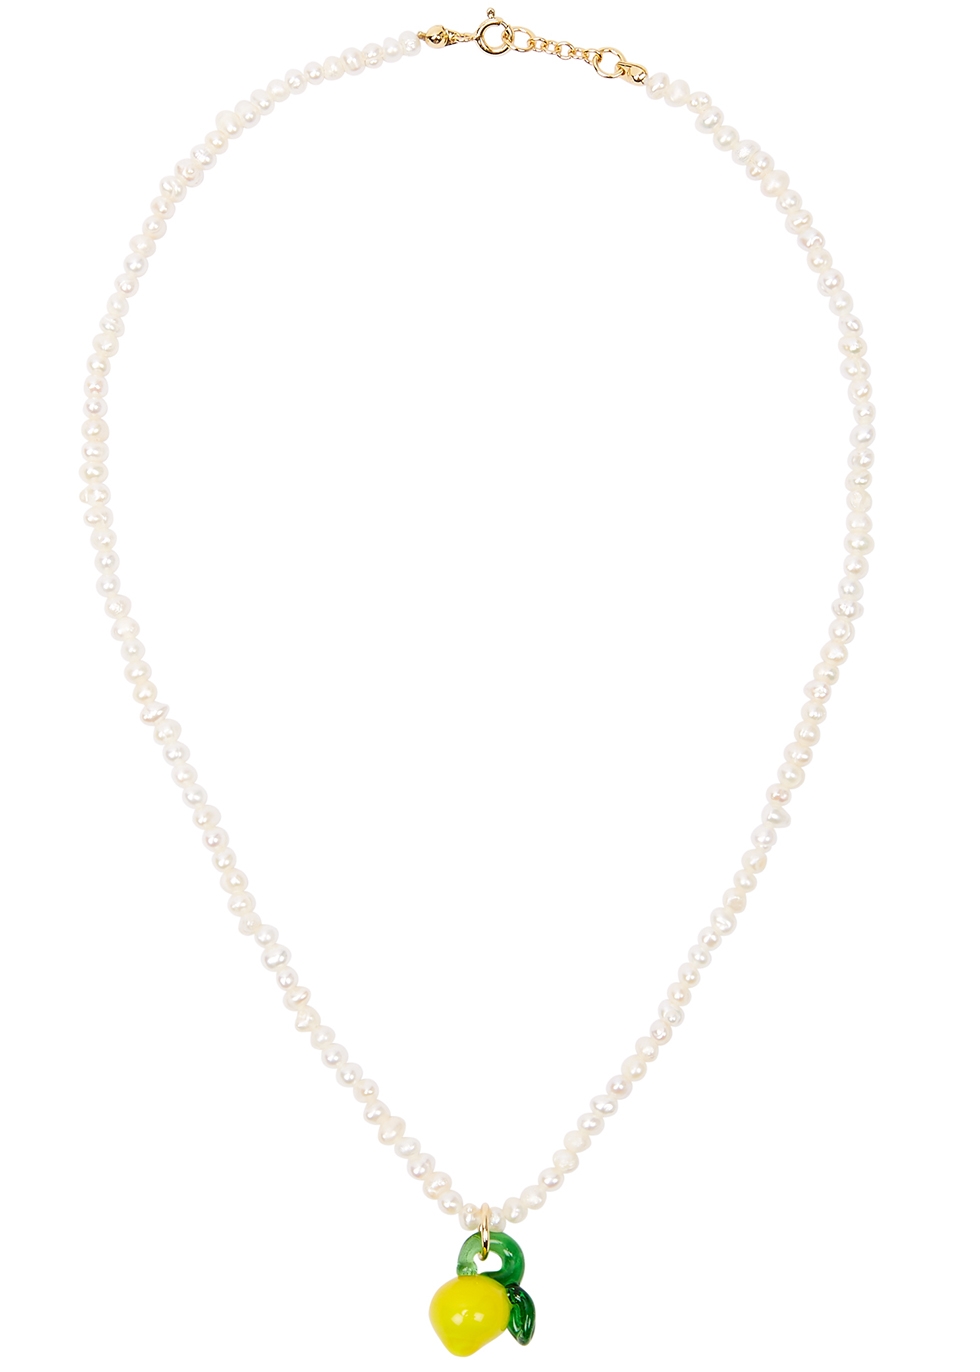 Lemon pearl necklace